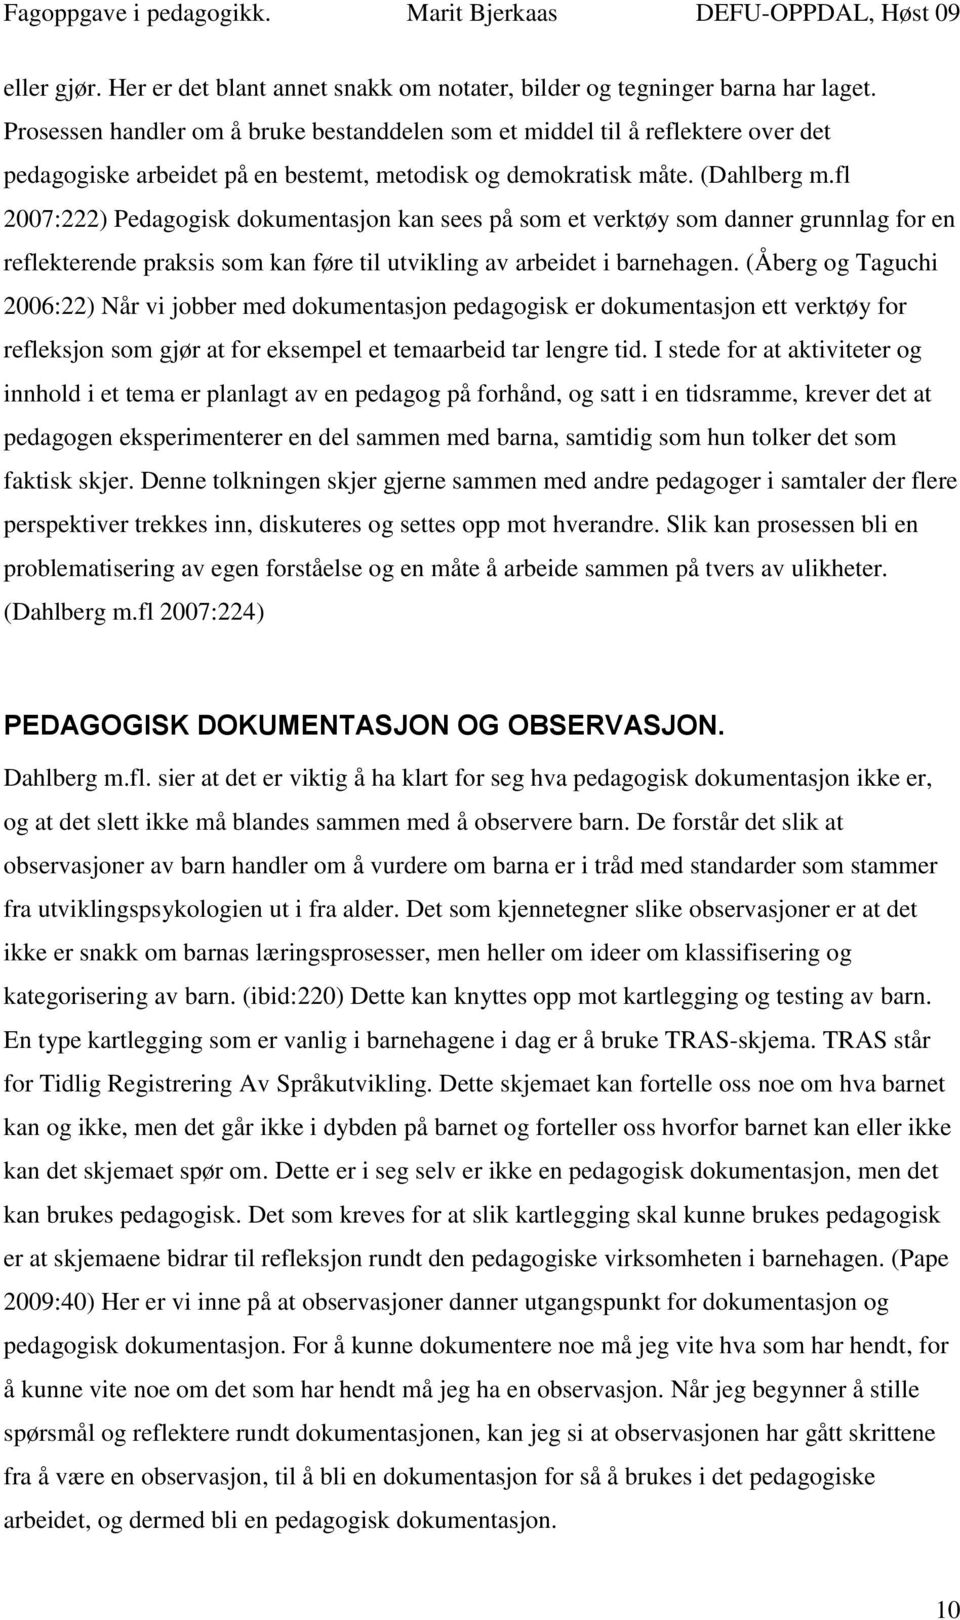 PEDAGOGISK DOKUMENTASJON FAGOPPGAVE I PEDAGOGIKK. - PDF Free Download